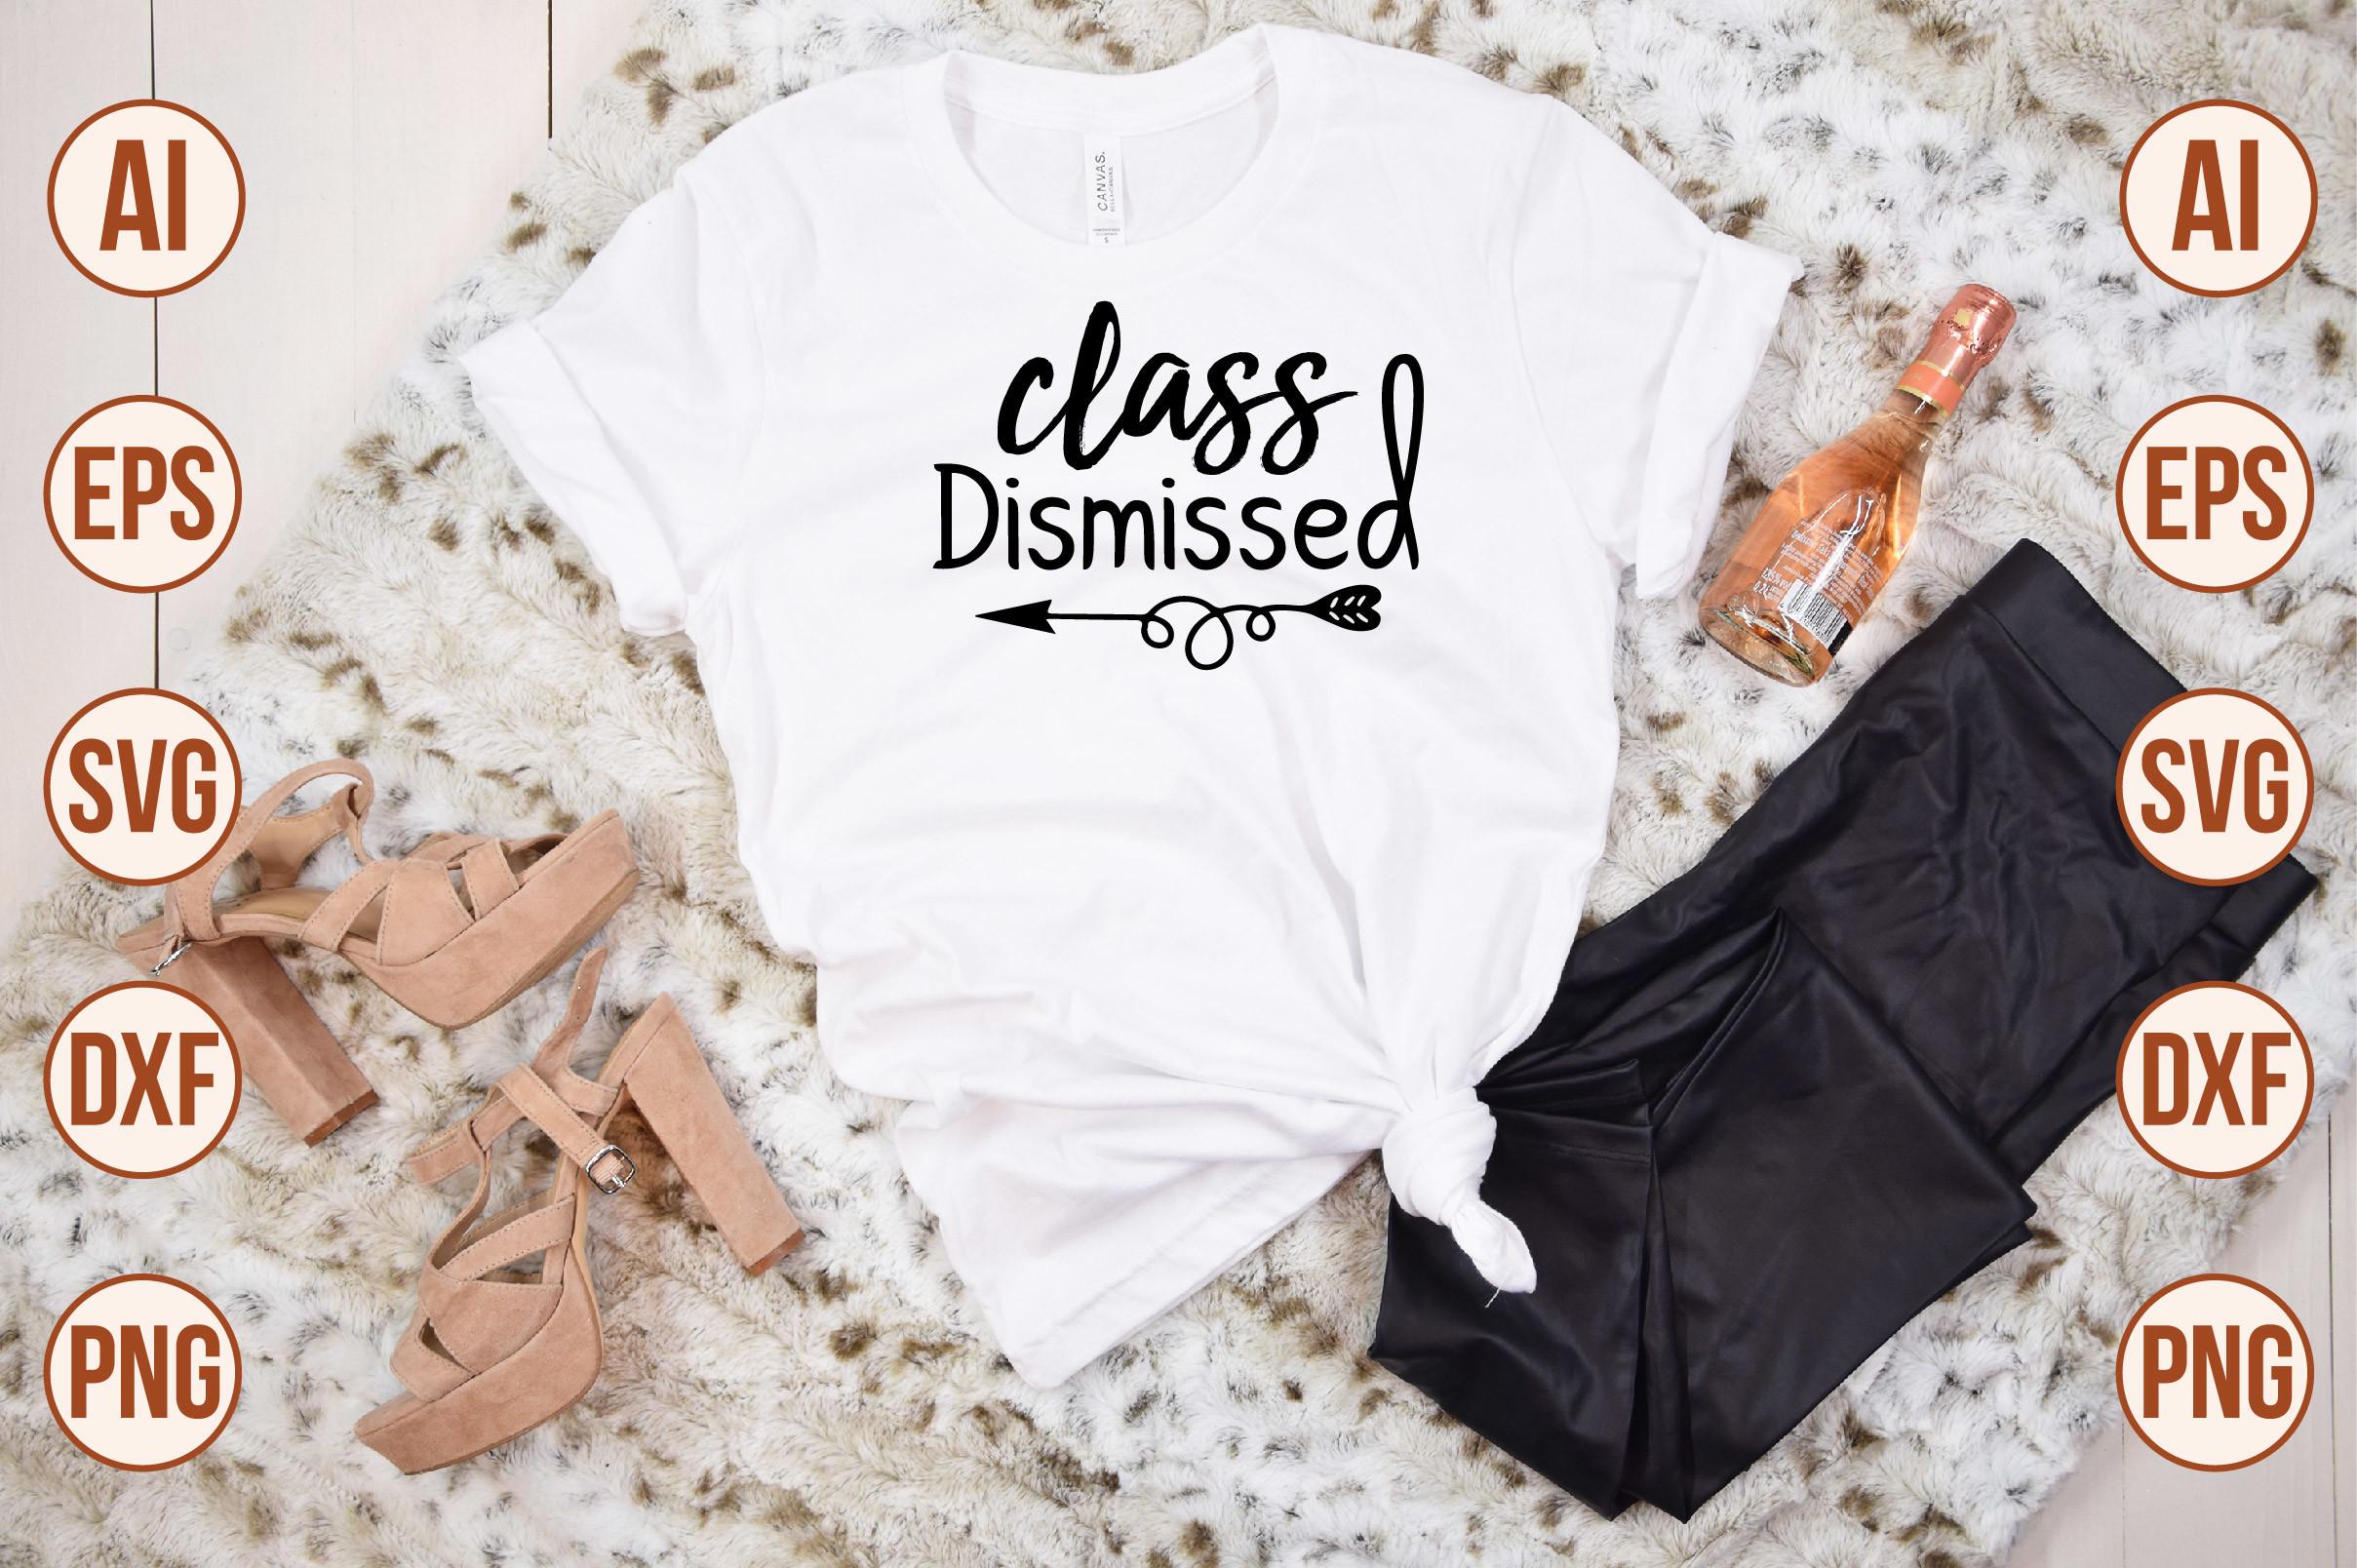 Class Dismissed